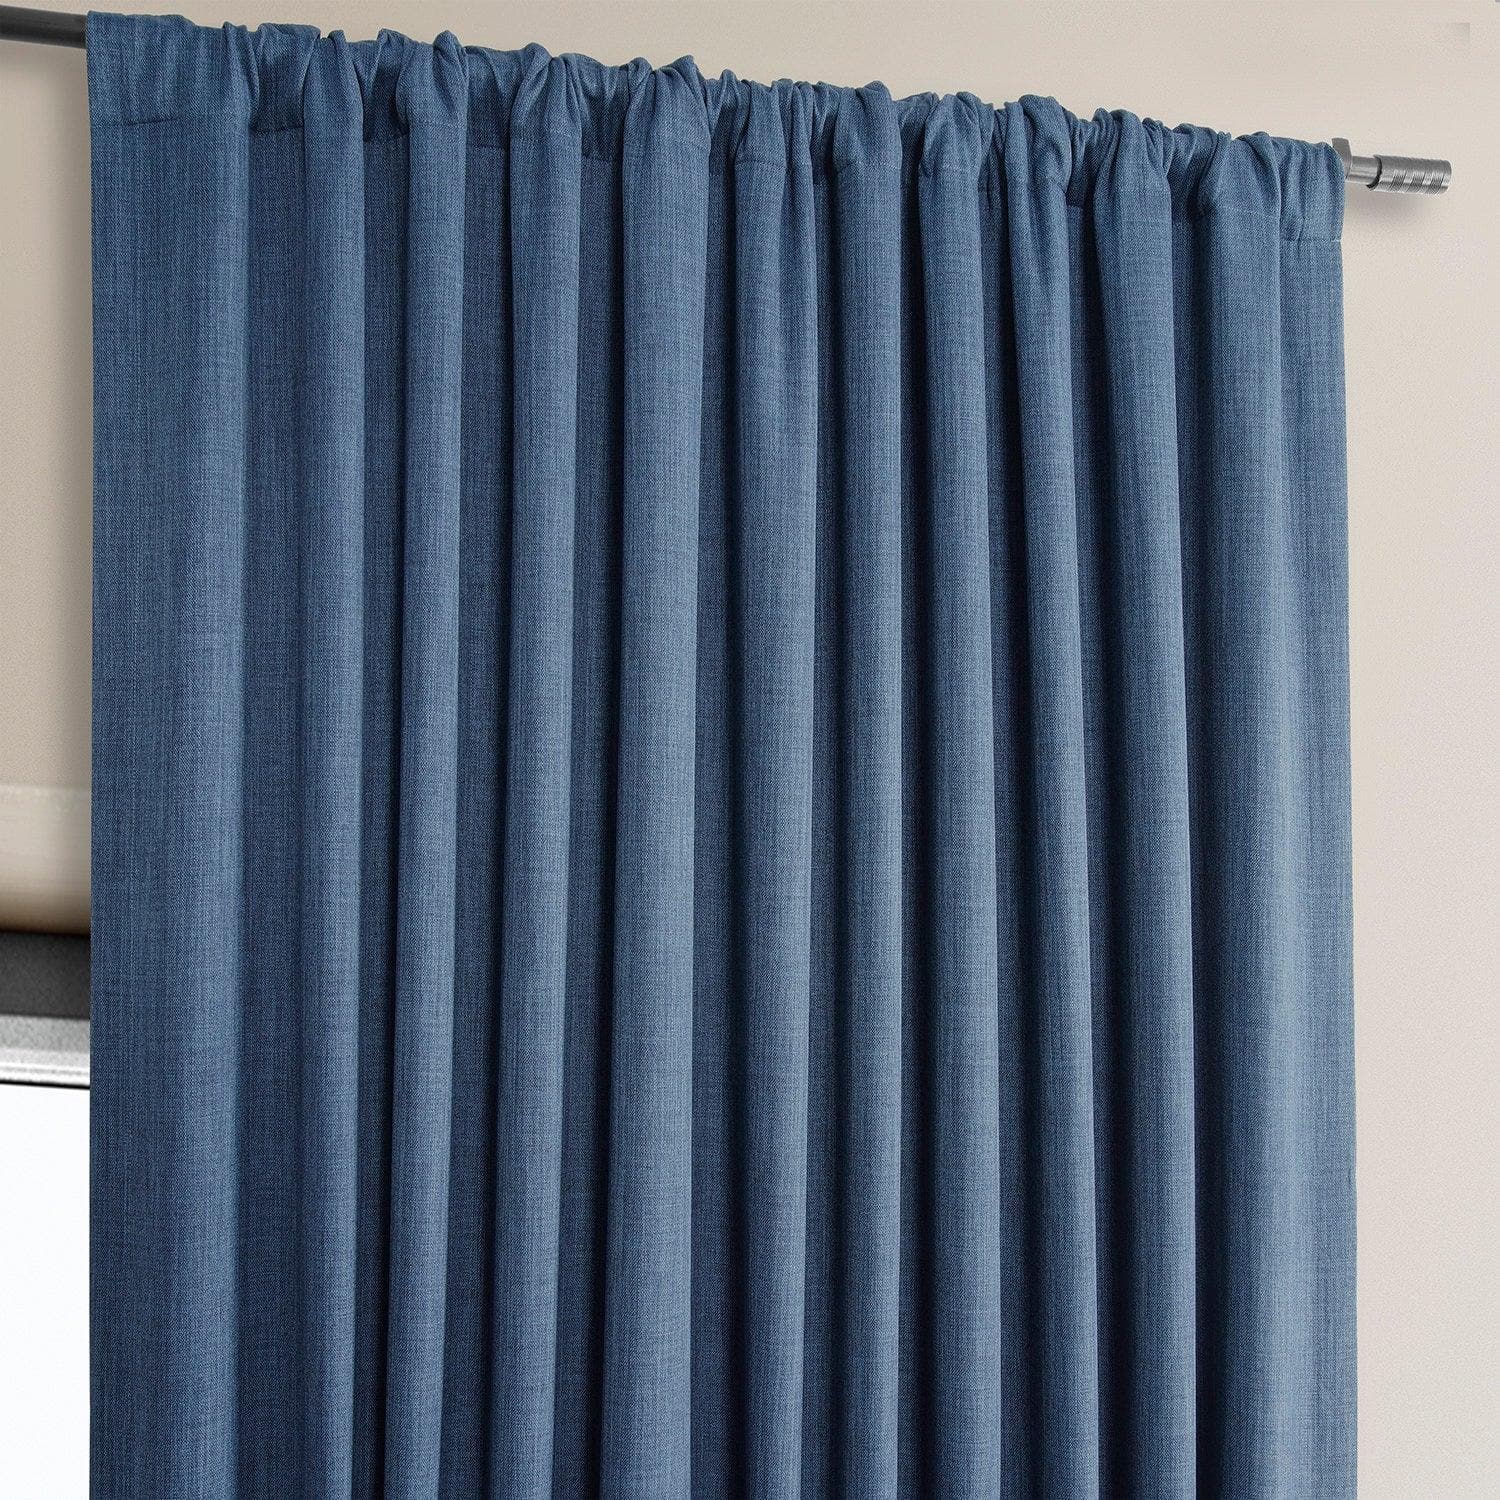 Denim Extra Wide Textured Faux Linen Room Darkening Curtain